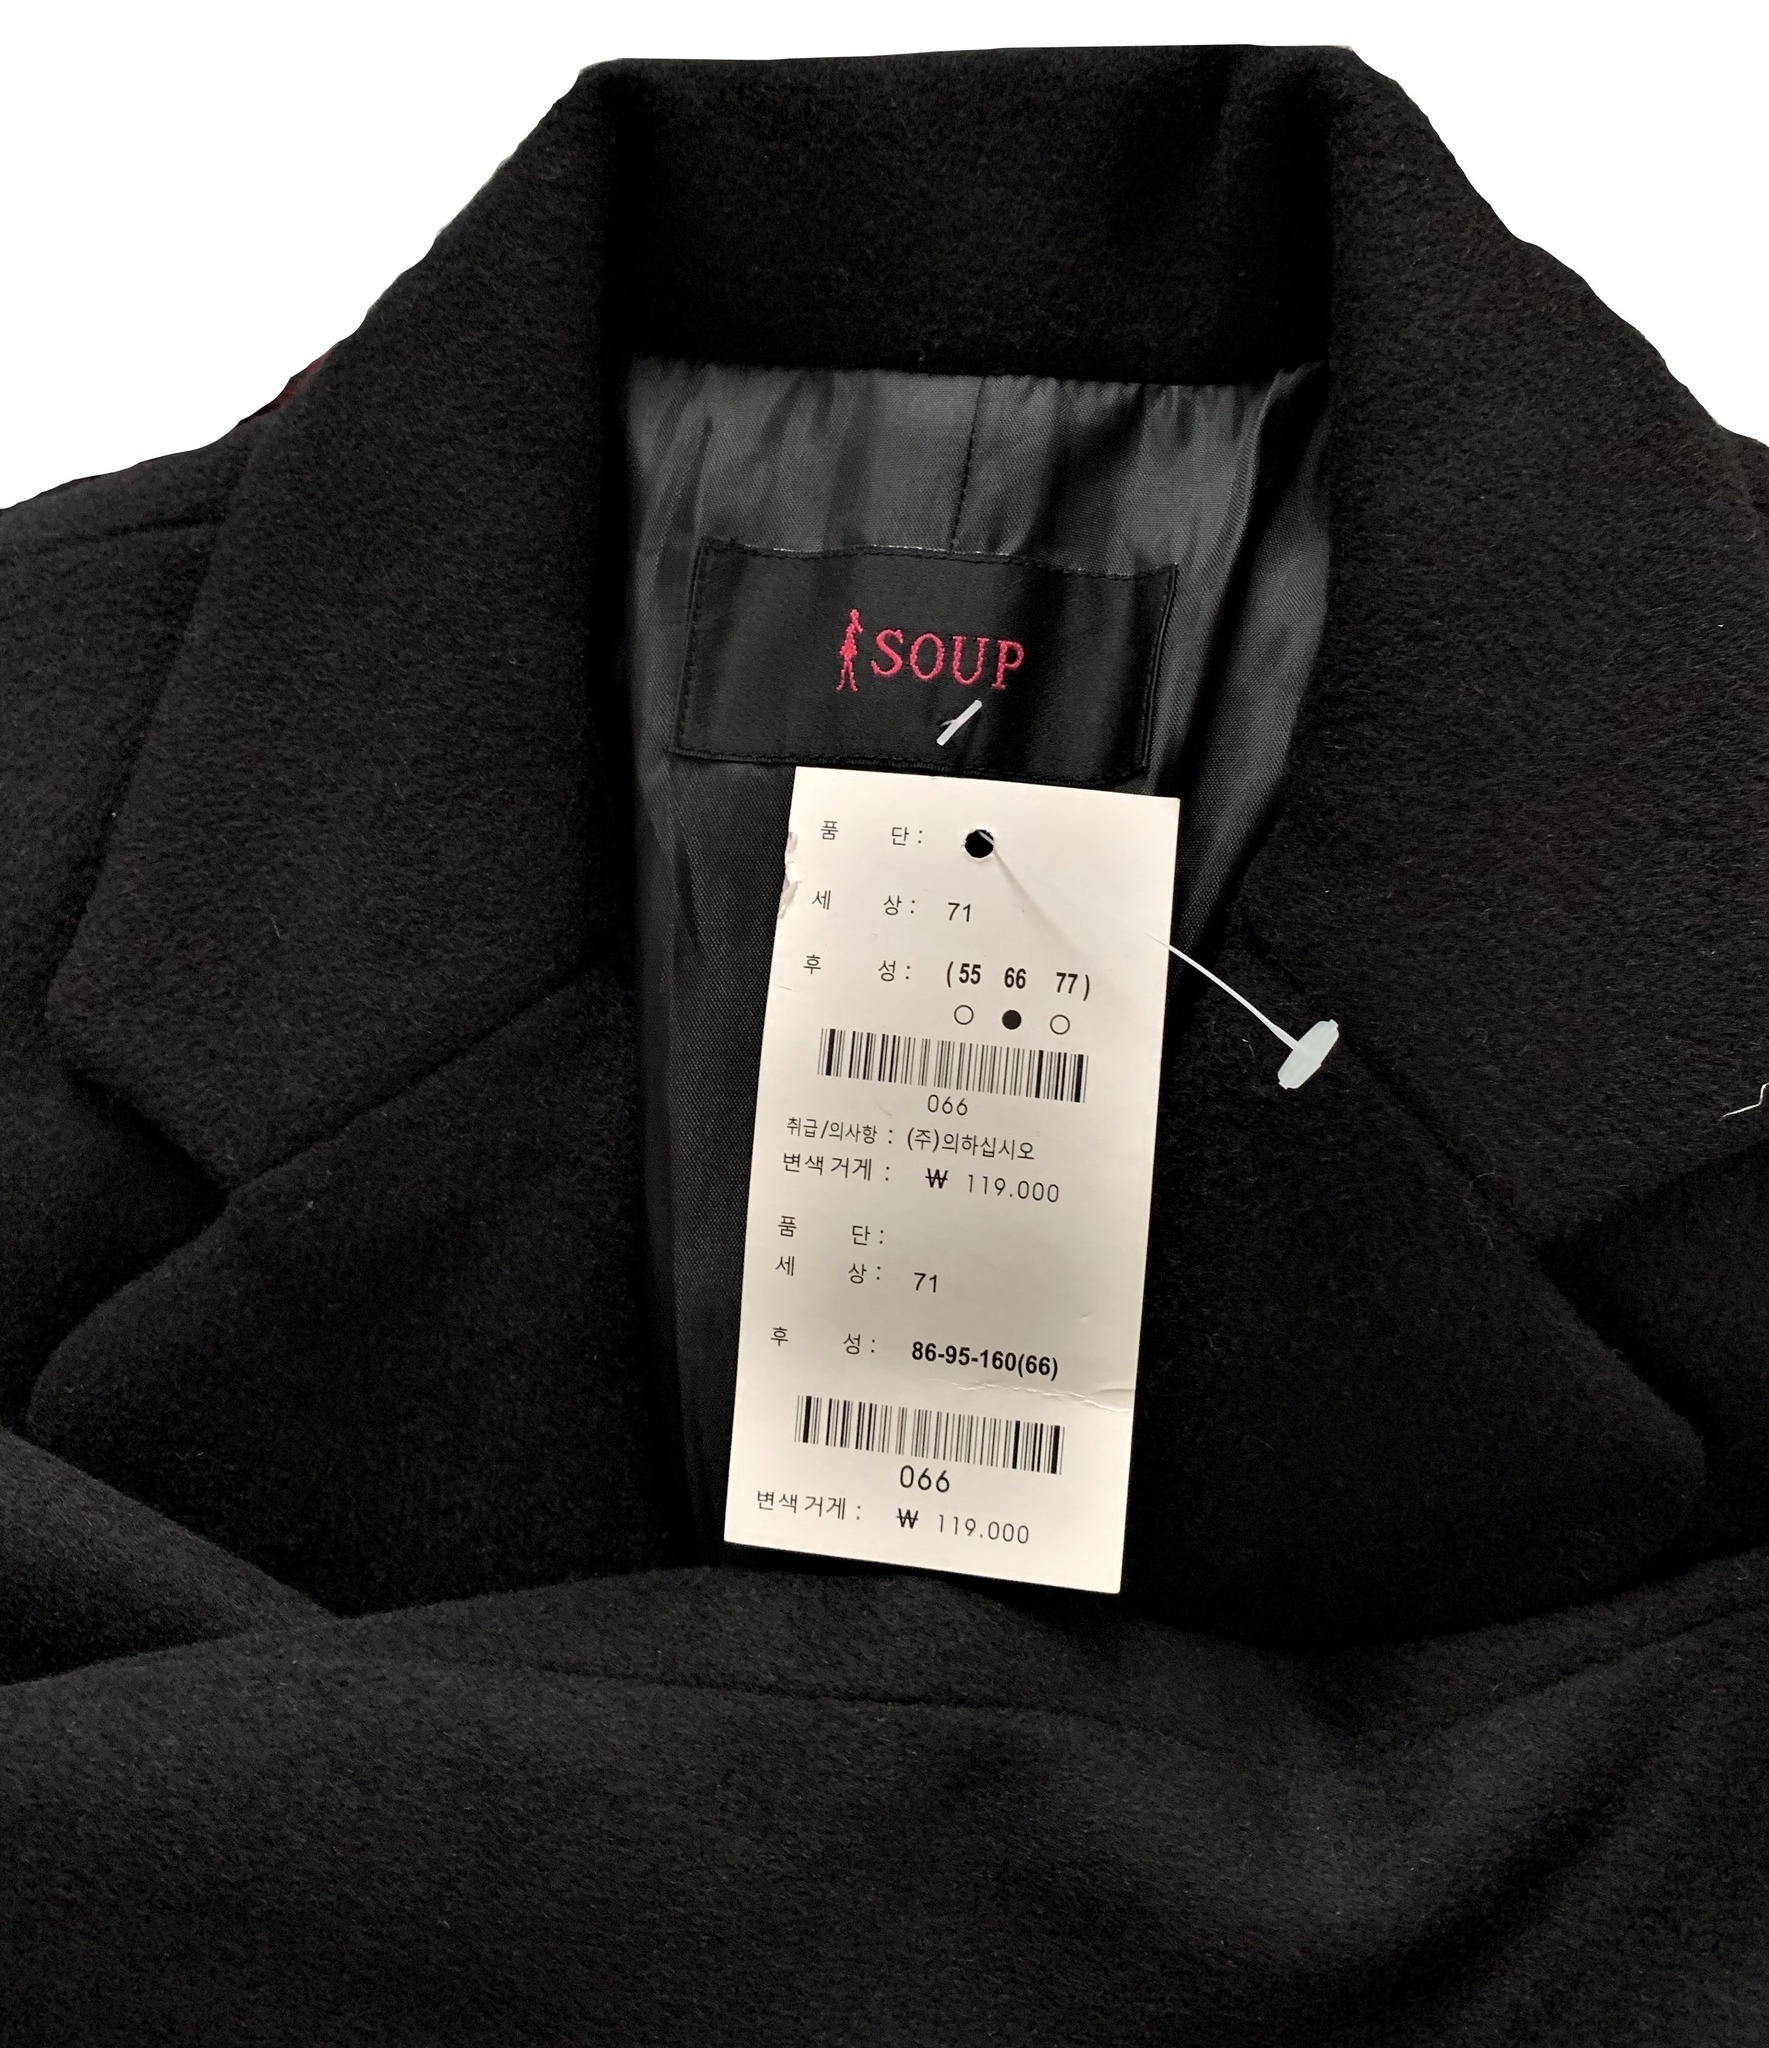 Áo dạ Wool blend overcoat S()up xuất Hàn dành cho Nữ. Vải wool 2 lớp dày dặn, sang trọng